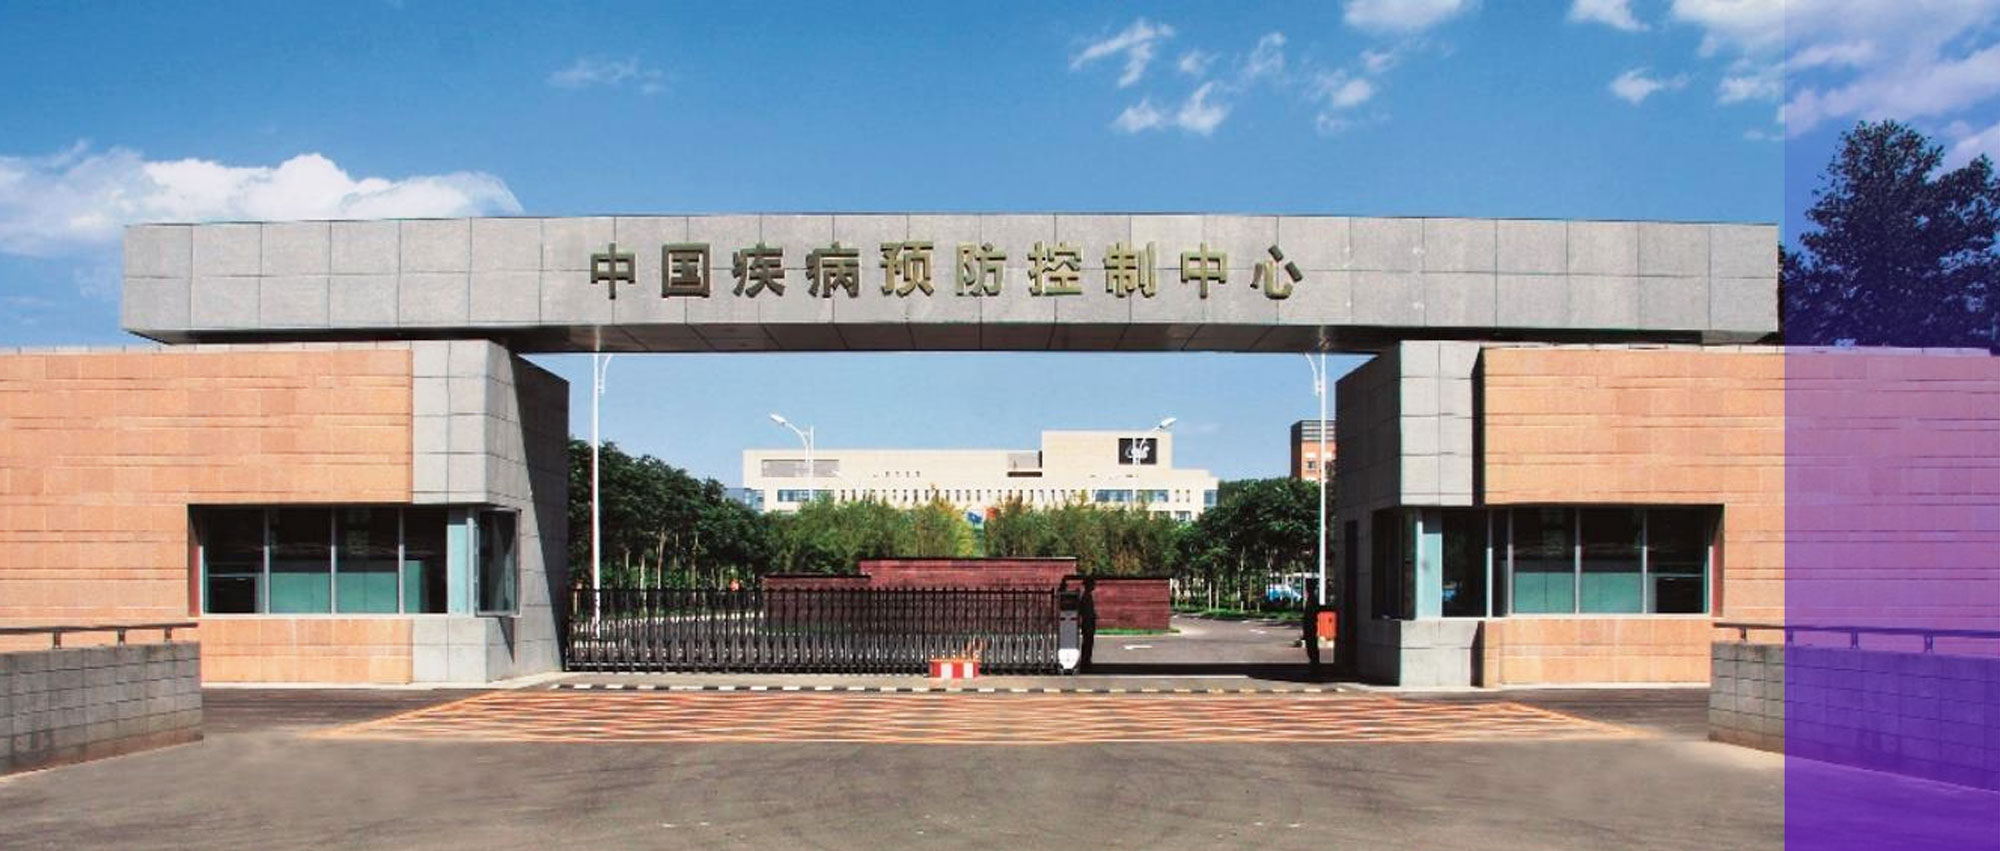 丽动态丨丽珠高精度HIV病毒载量检测系统进驻中国疾控中心艾防中心